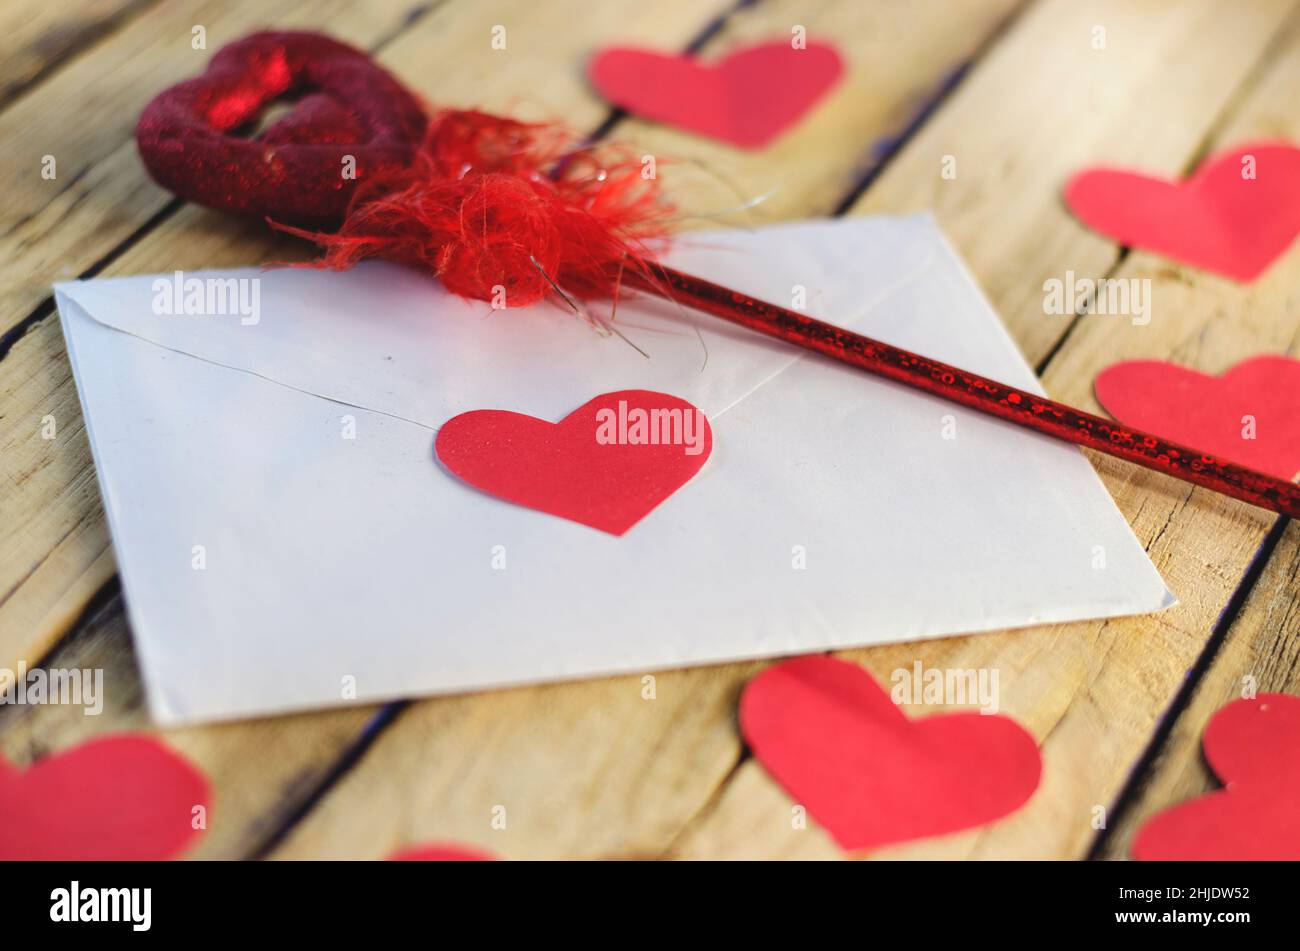 Schrift und rote Herzen auf einer hölzernen Oberfläche Stockfoto